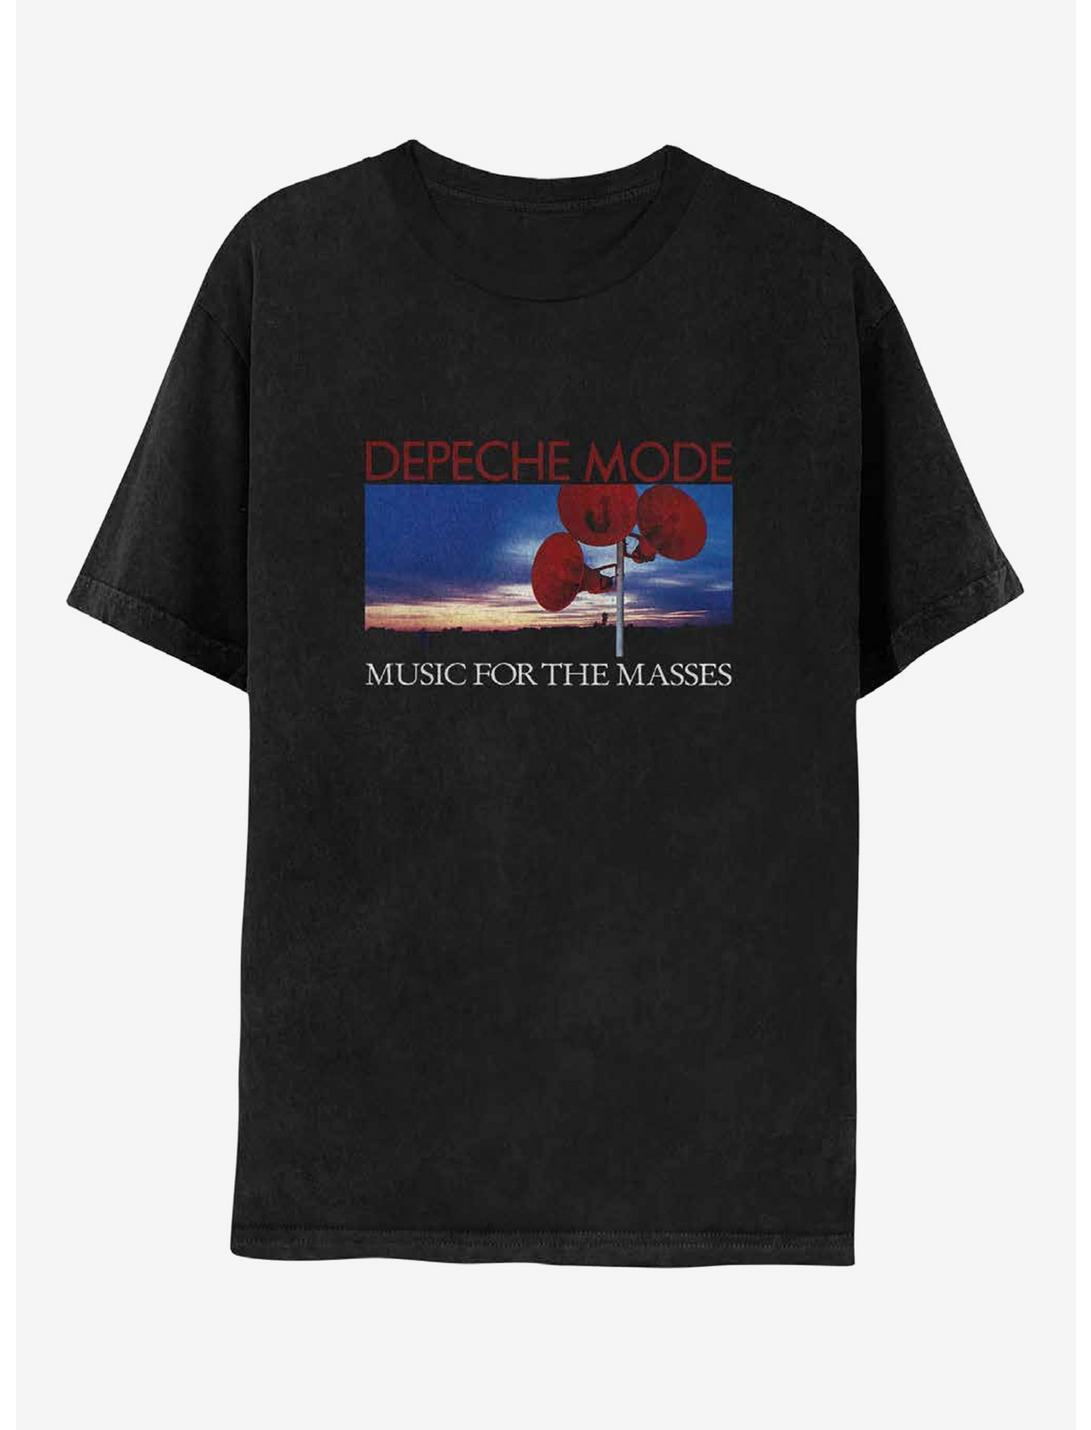 Depeche Mode Music For The Masses Album Art T-Shirt, BLACK, hi-res